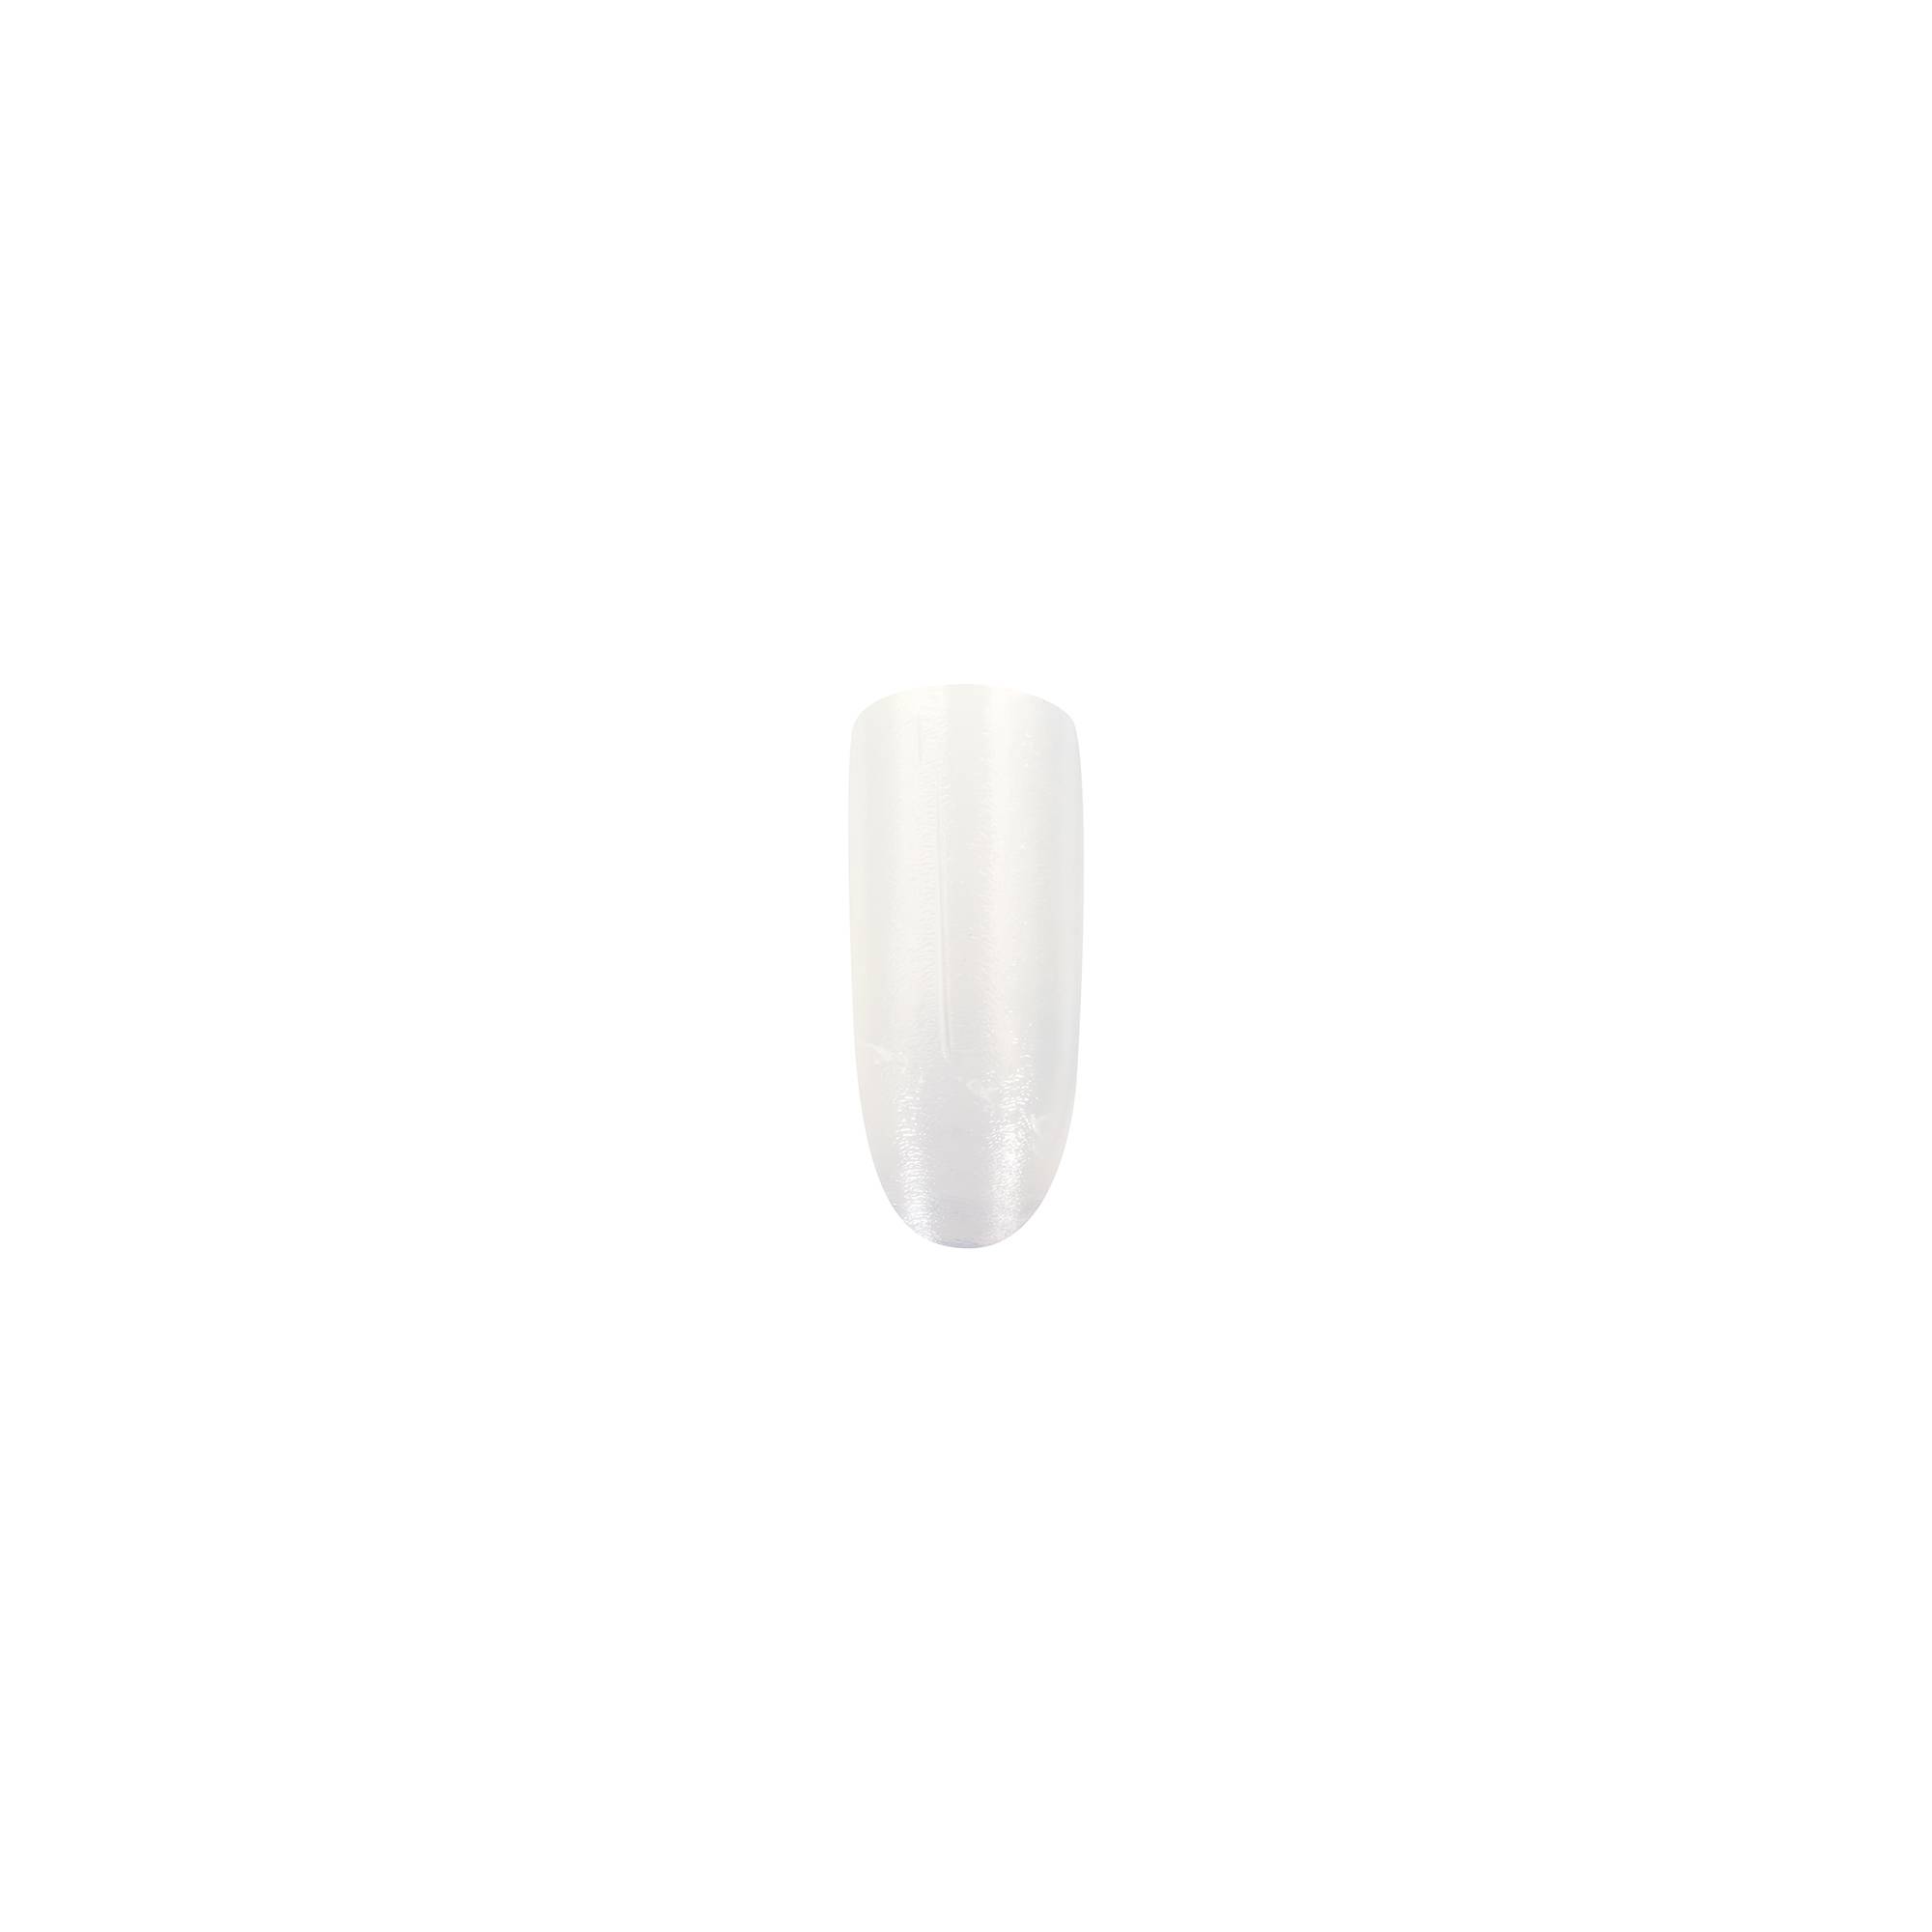 Durcisseur cure express - Milky white de la marque Peggy Sage Contenance 11ml - 2